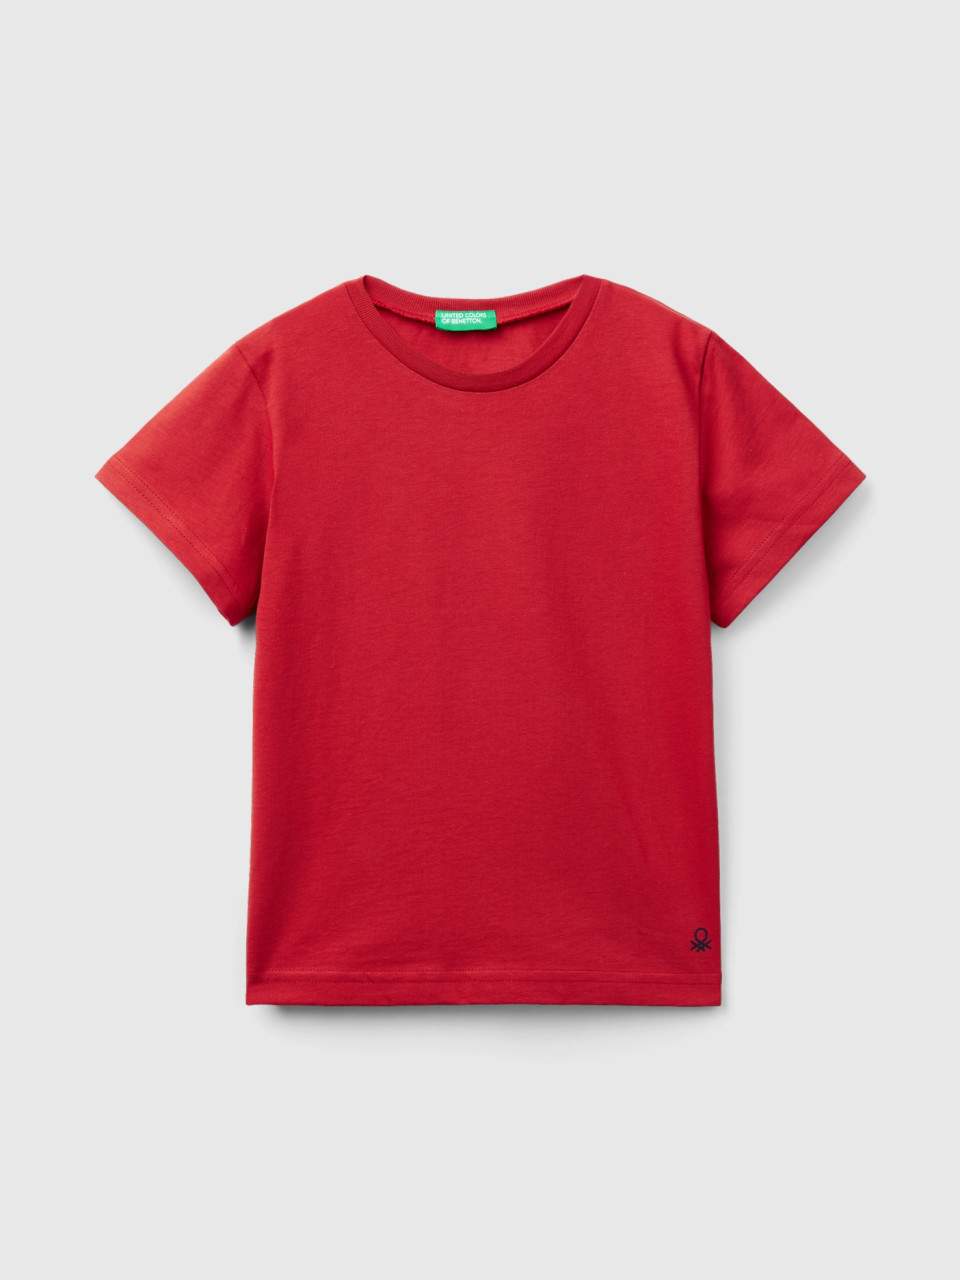 Benetton, T-shirt Em Algodão Orgânico, Vermelho-tijolo, Crianças